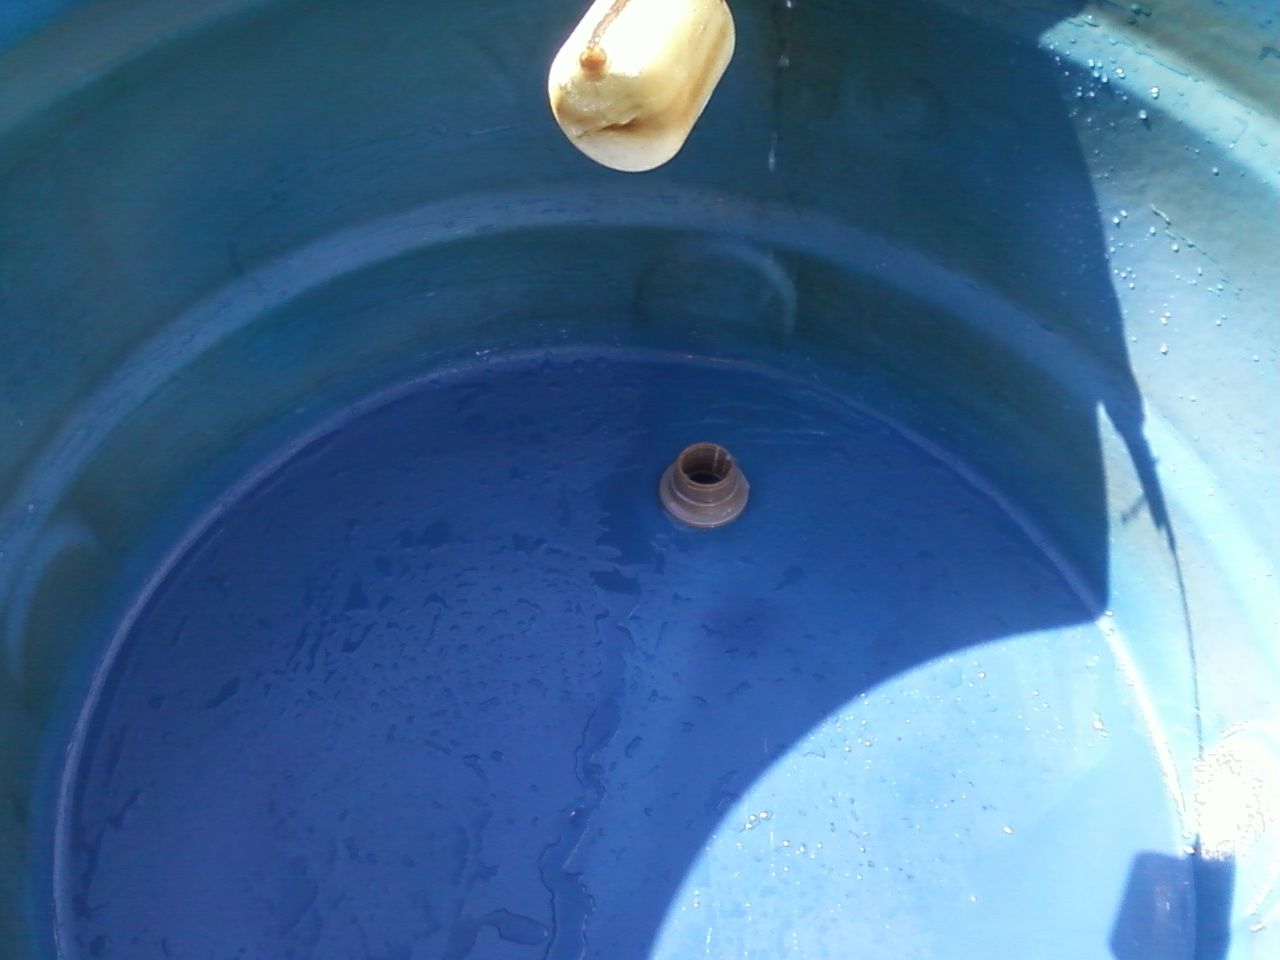 Reparo de Caixa de água Preço Perus - Empresa de Instalação de Caixa de água